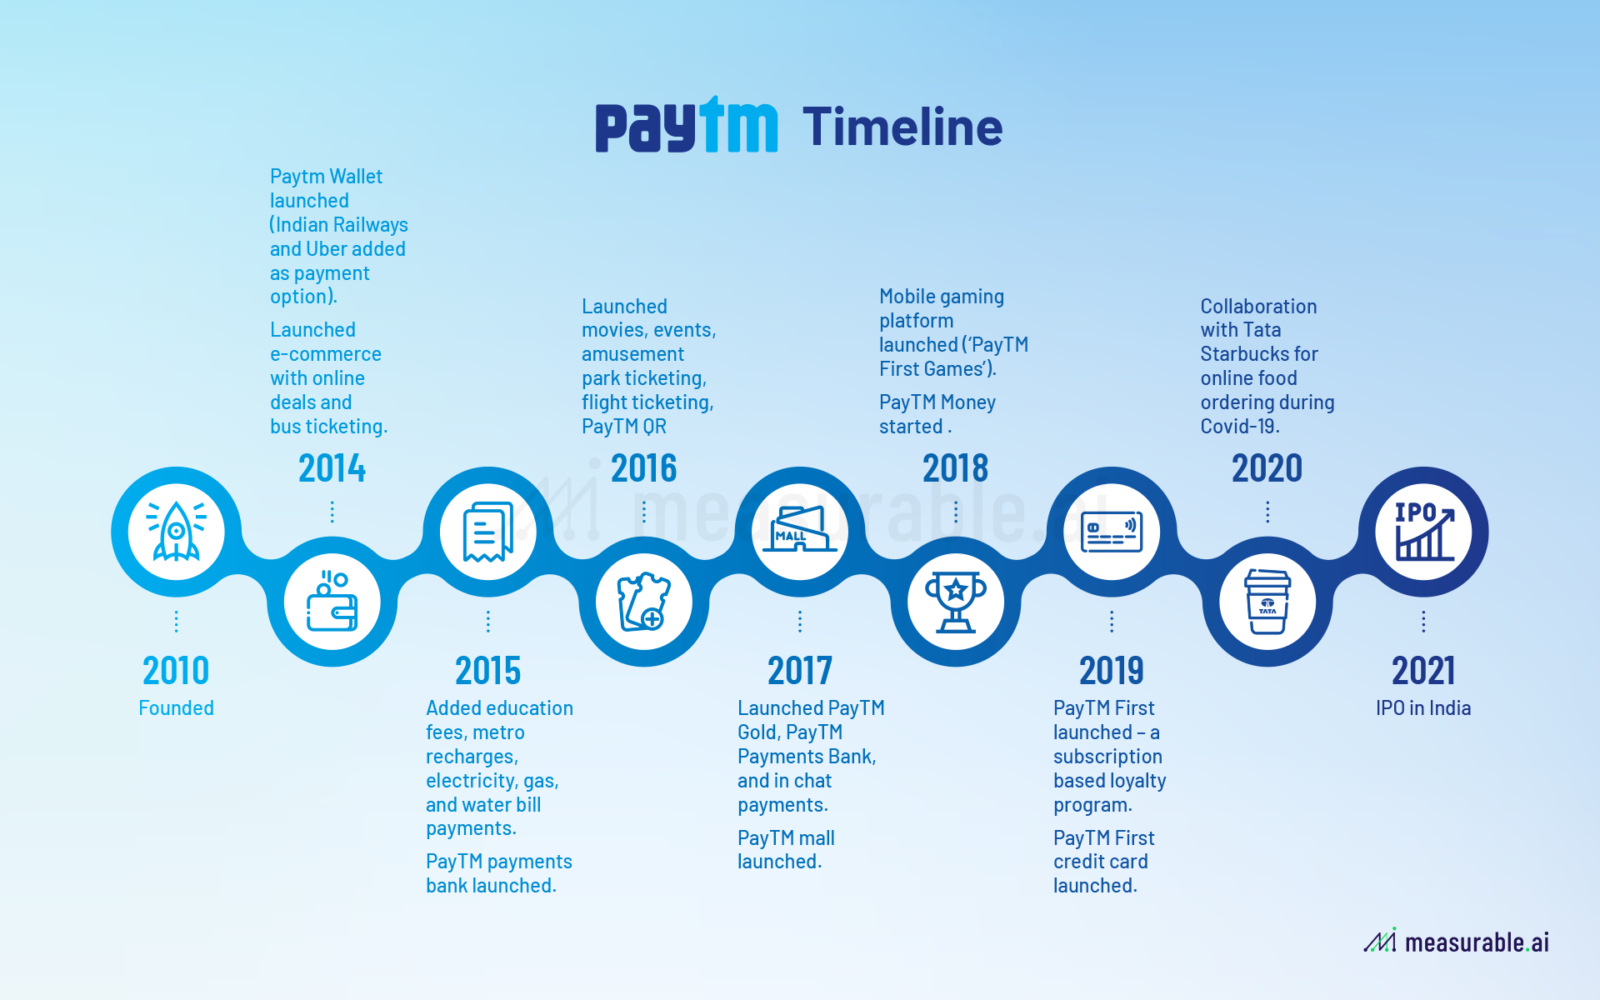 PayTM Timeline